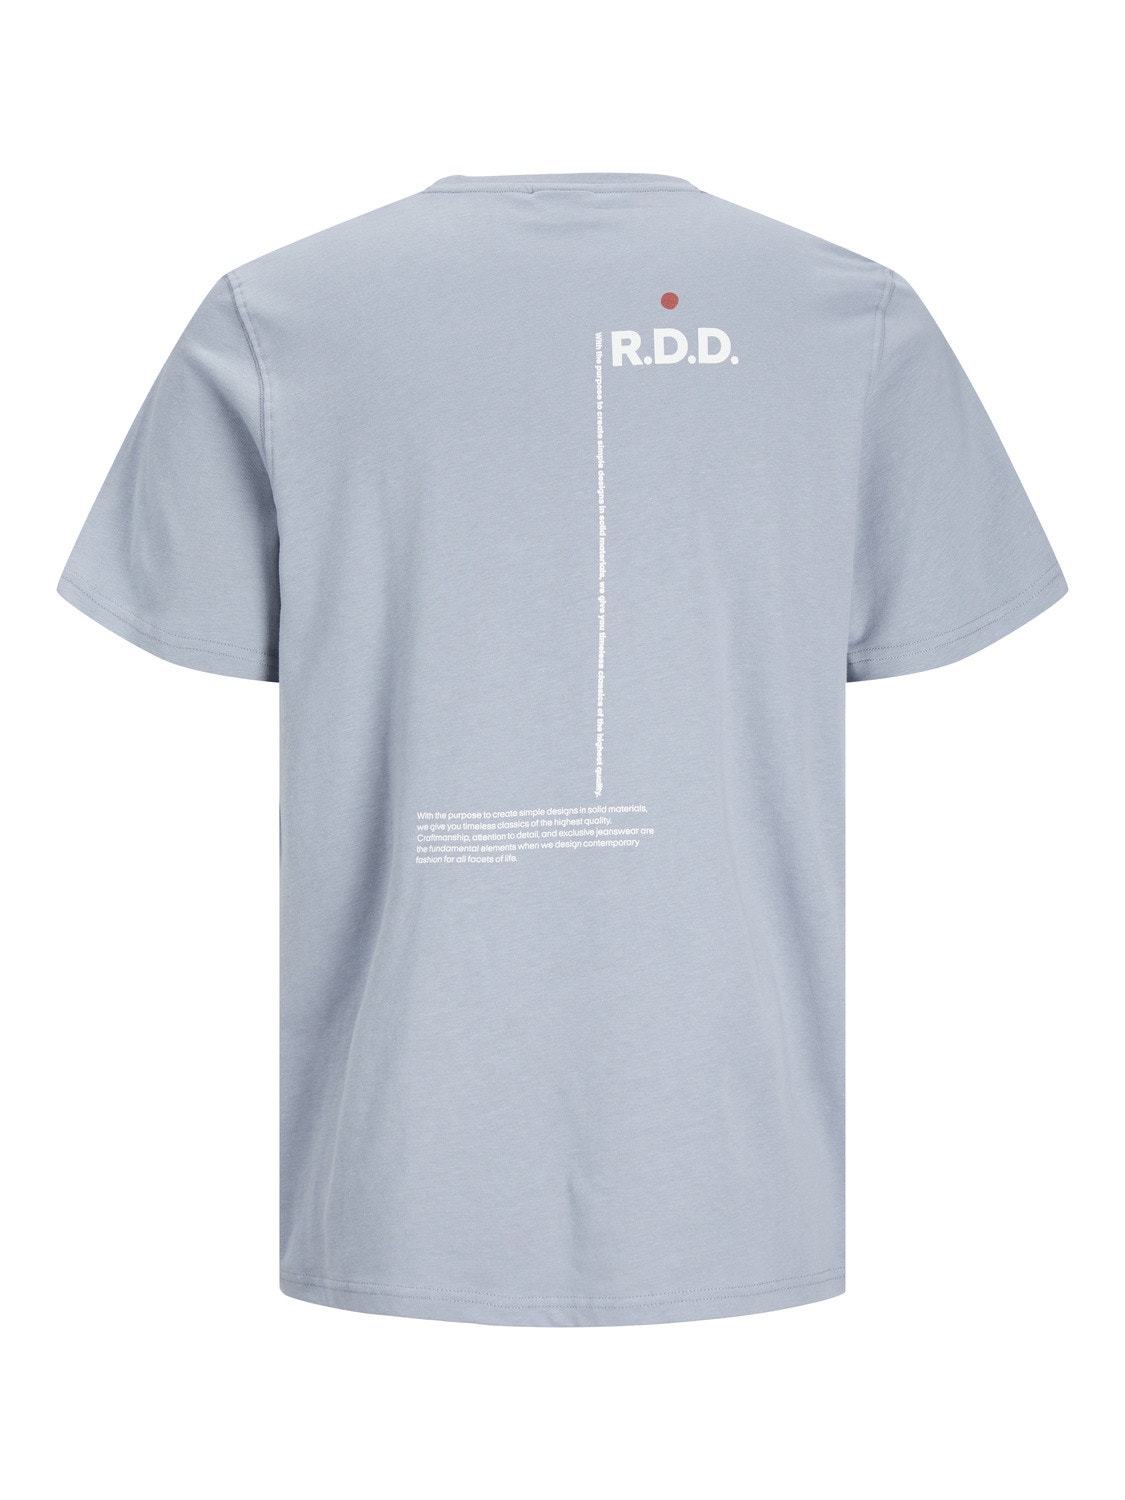 Jack & Jones RDD Camiseta Estampado Cuello redondo -Tradewinds - 12252153